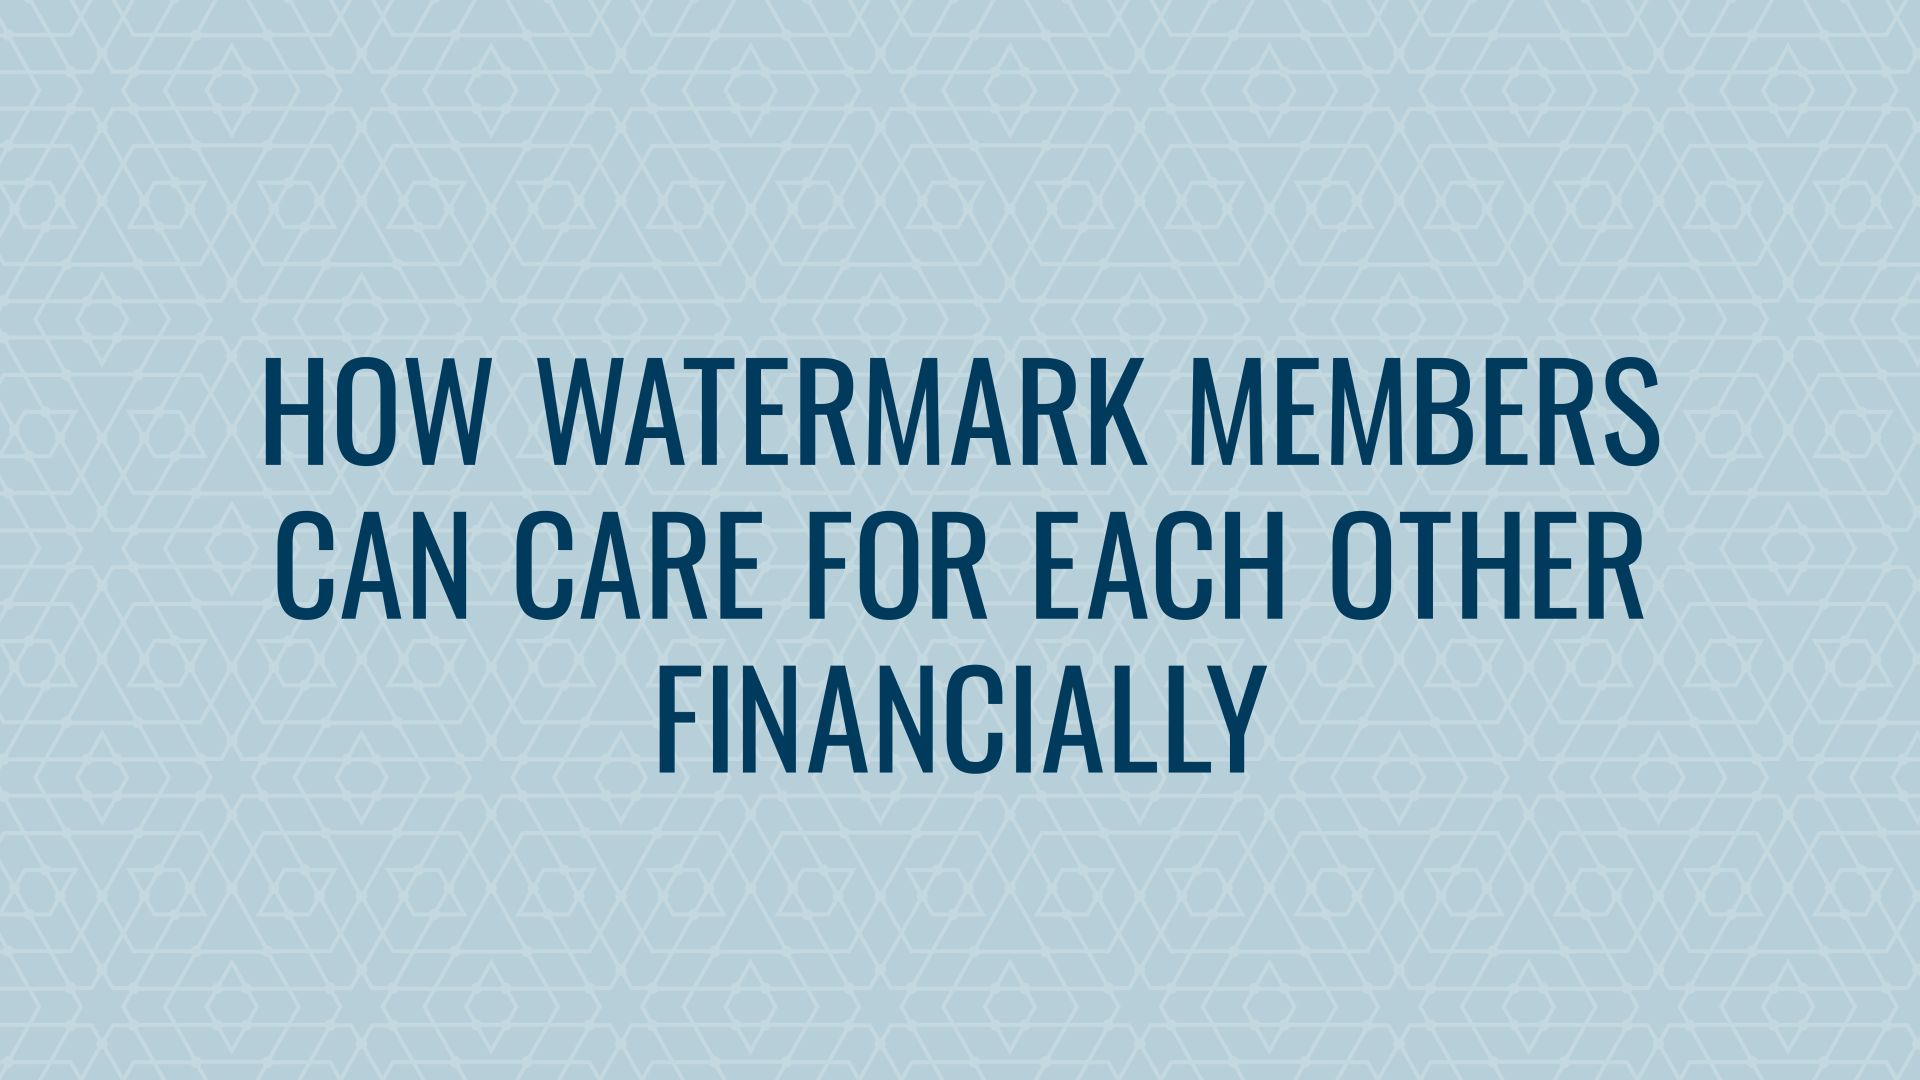 Watermark Members in Financial Need Hero Image